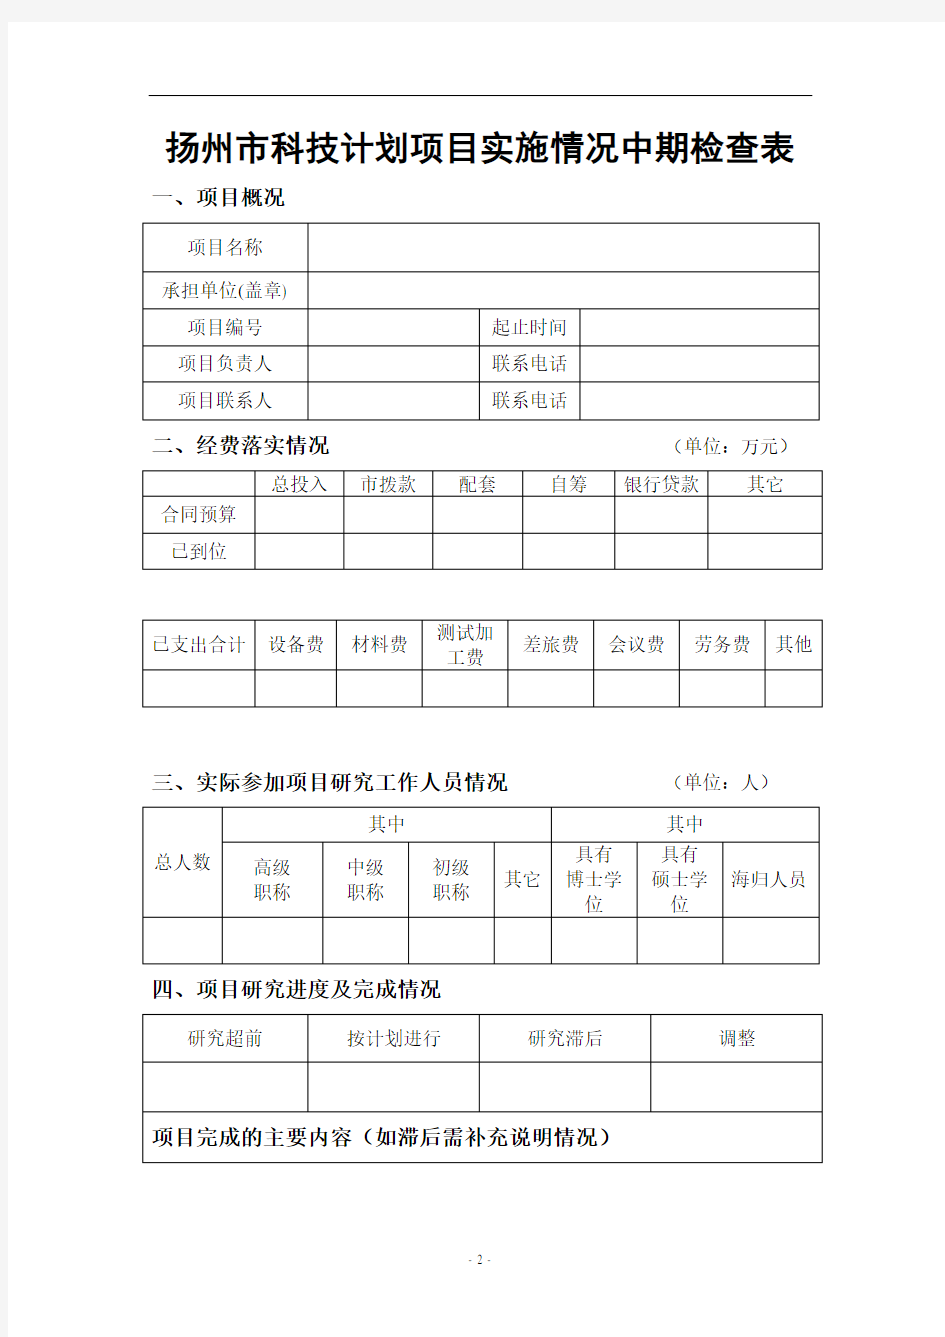 扬州市科技计划项目实施情况中期检查表